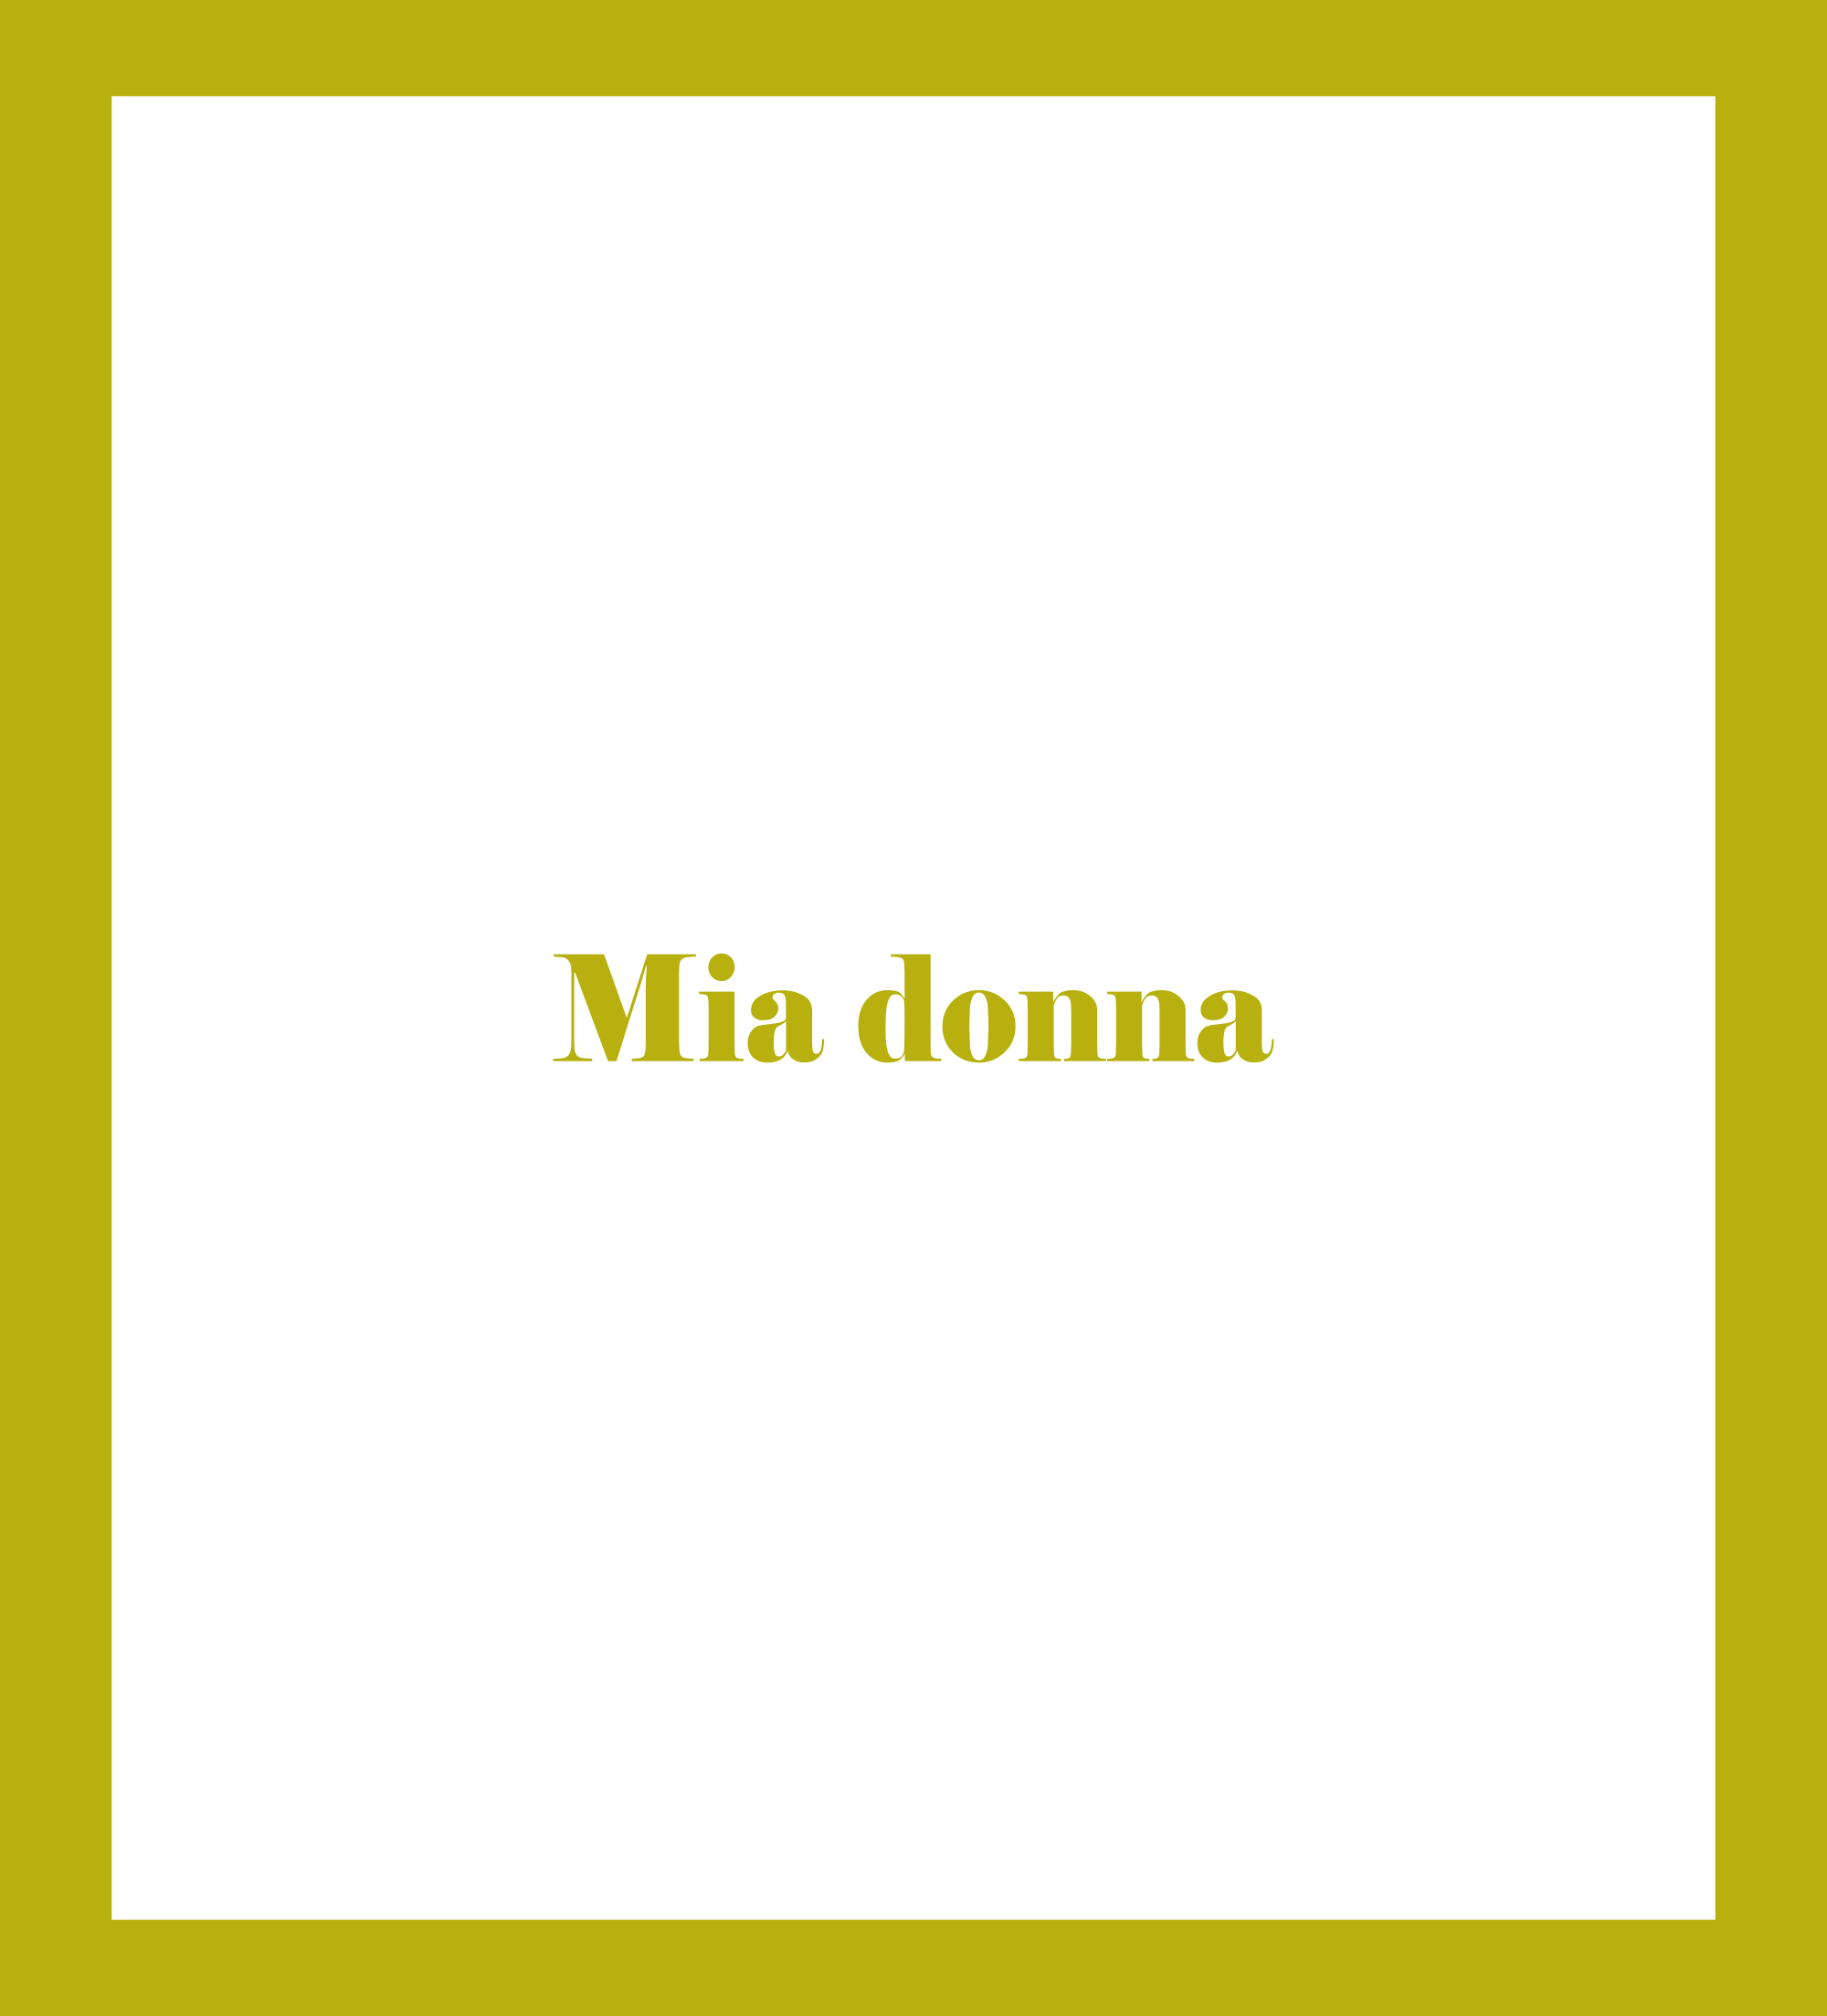 Caratula de Mia donna (Mia donna) 